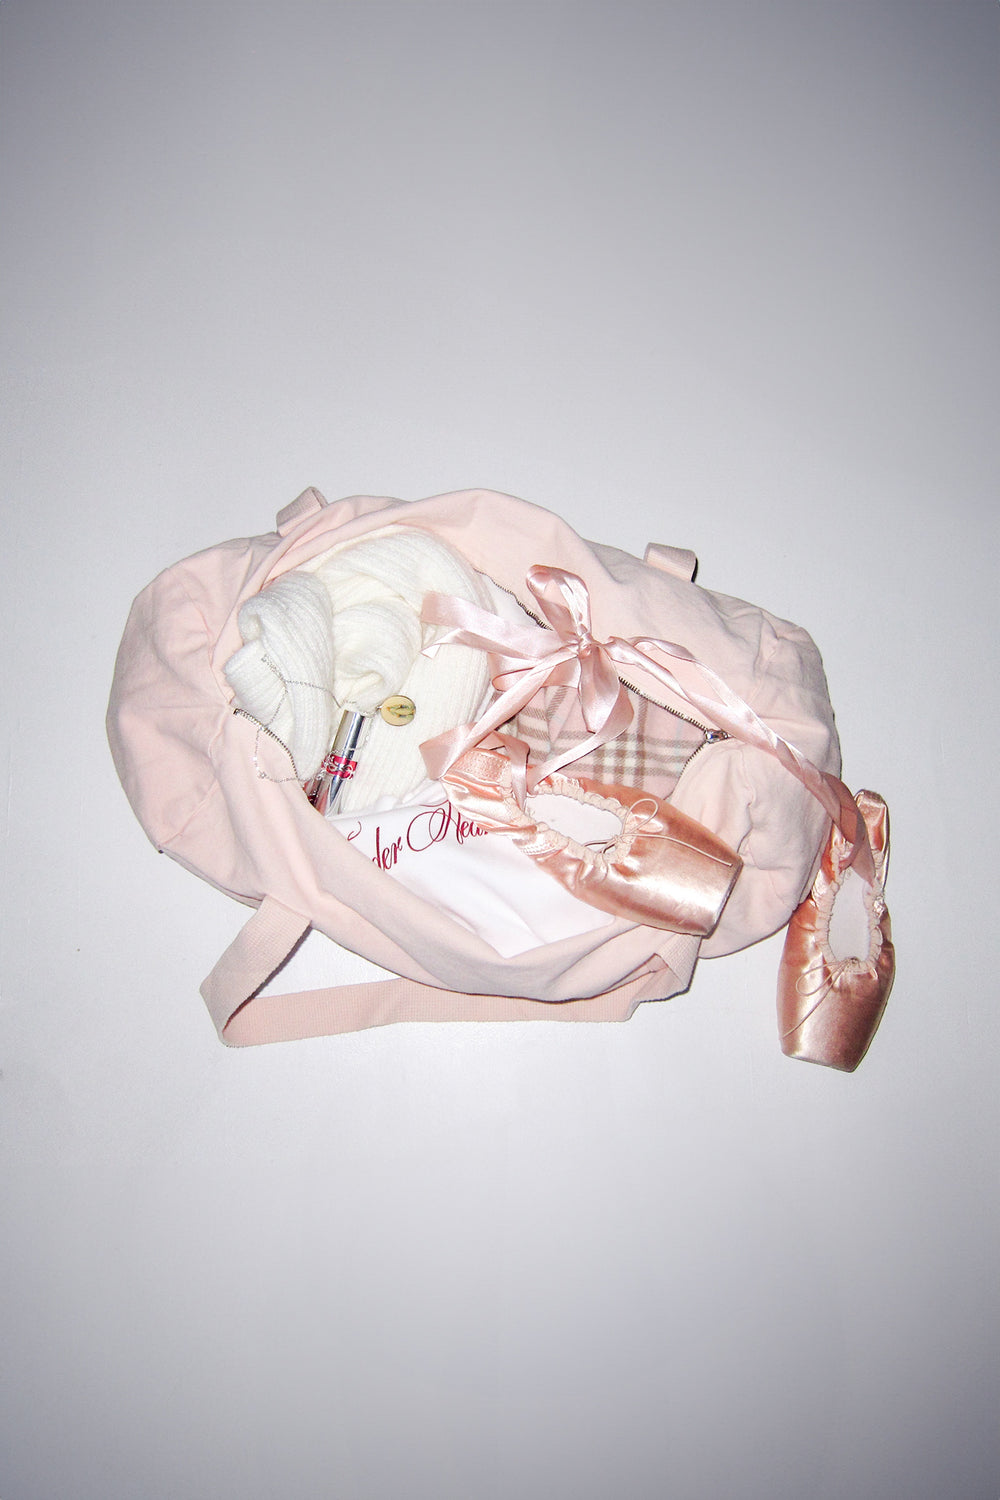 Swan Lake Ballet Bag